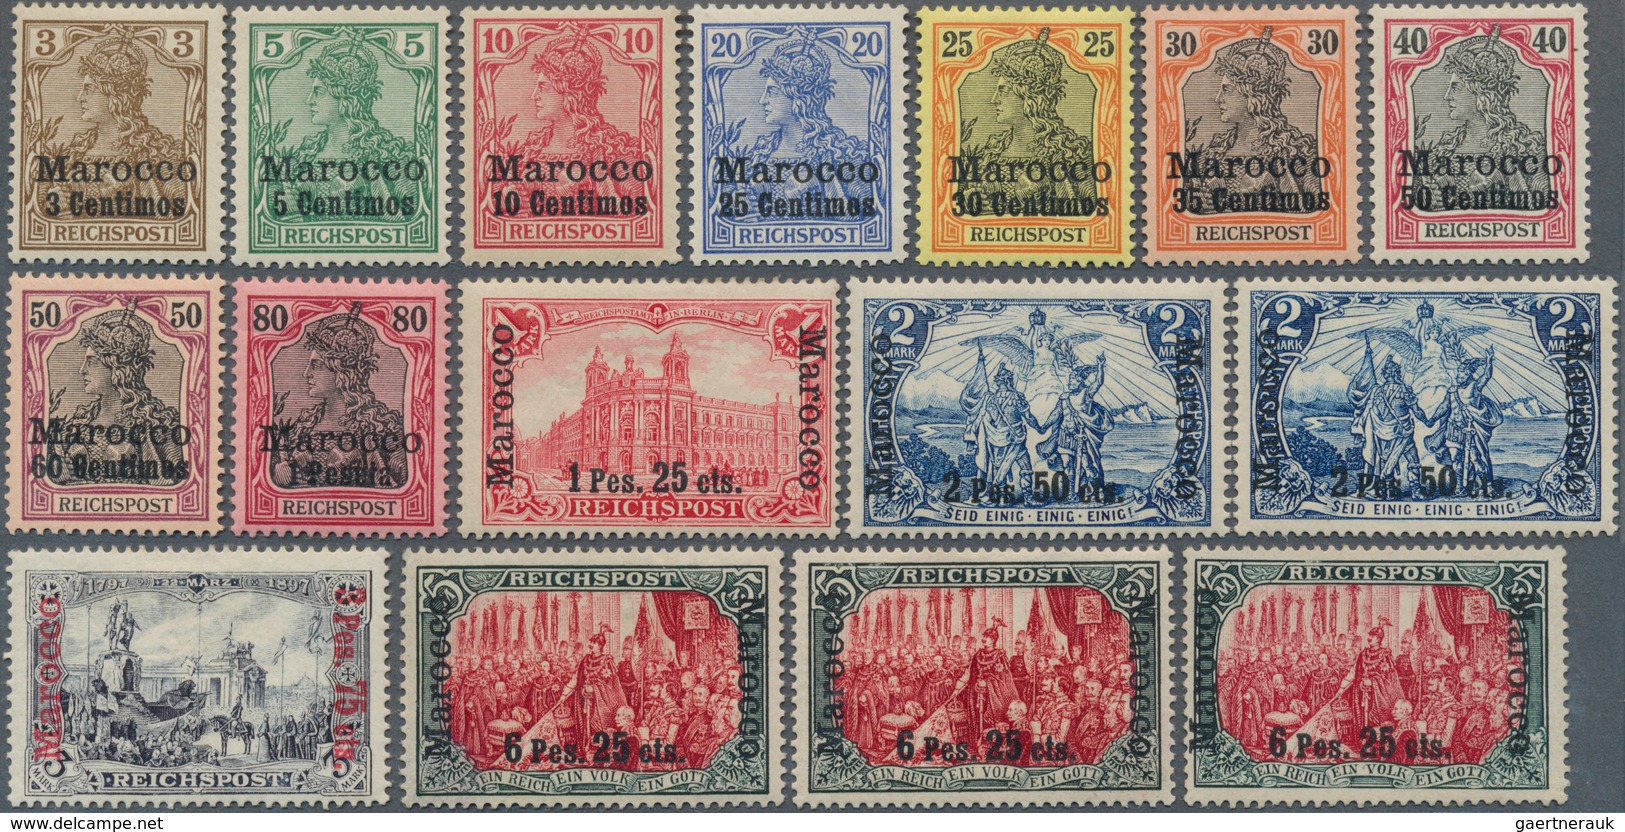 18466 Deutsche Post In Marokko: 1900, 3 C. Auf 3 Pfg. - 6 P. 25 C. Auf 5 Mark Freimarken Reichspost Mit Au - Morocco (offices)